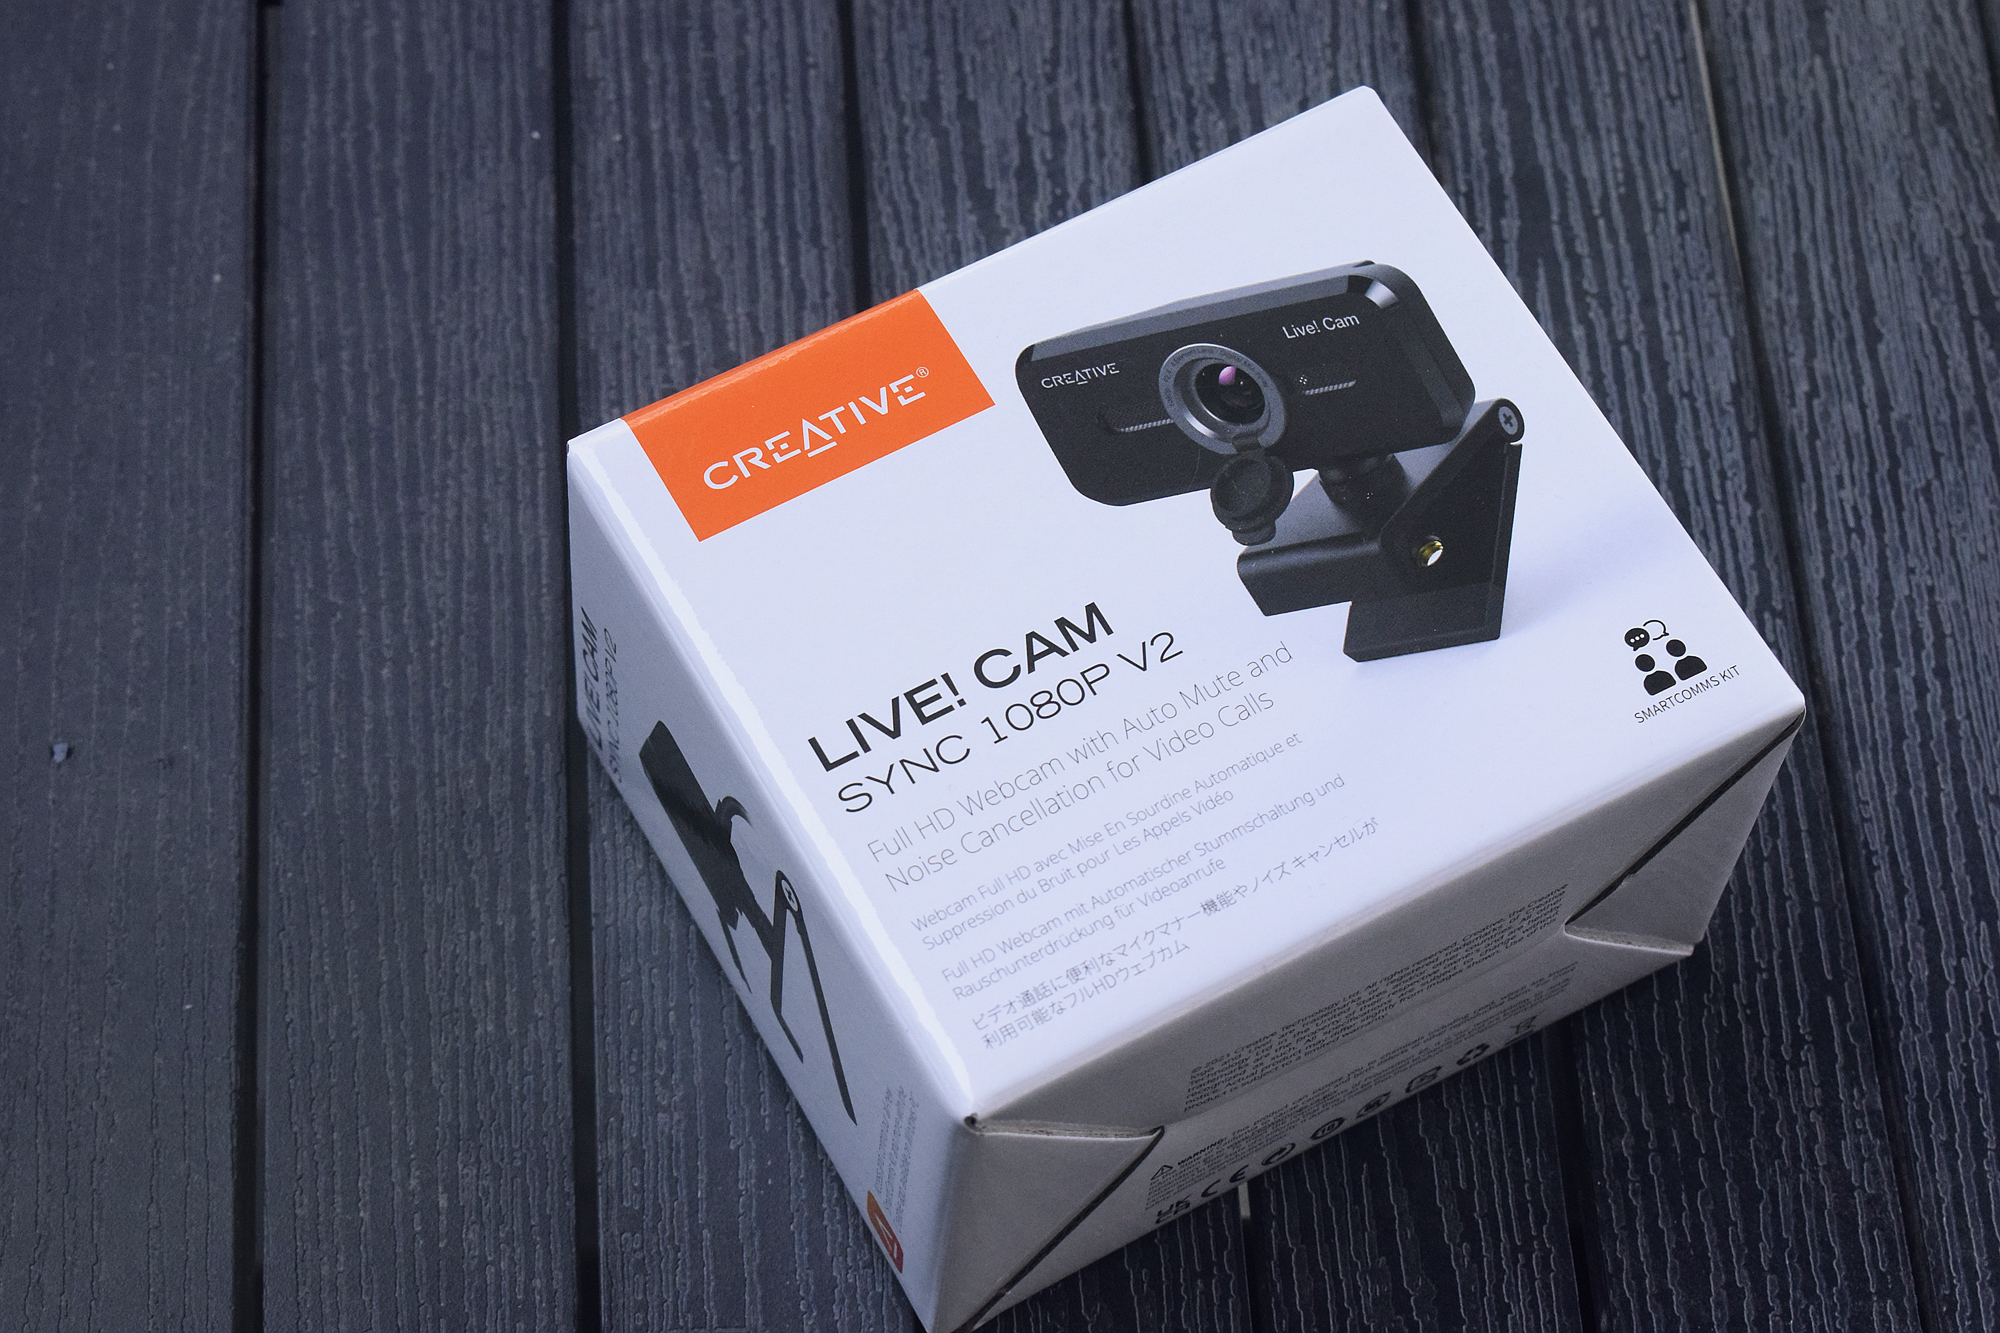 既流畅无噪，又保护隐私！创新Live Cam Sync 1080p V2网络摄像头体验